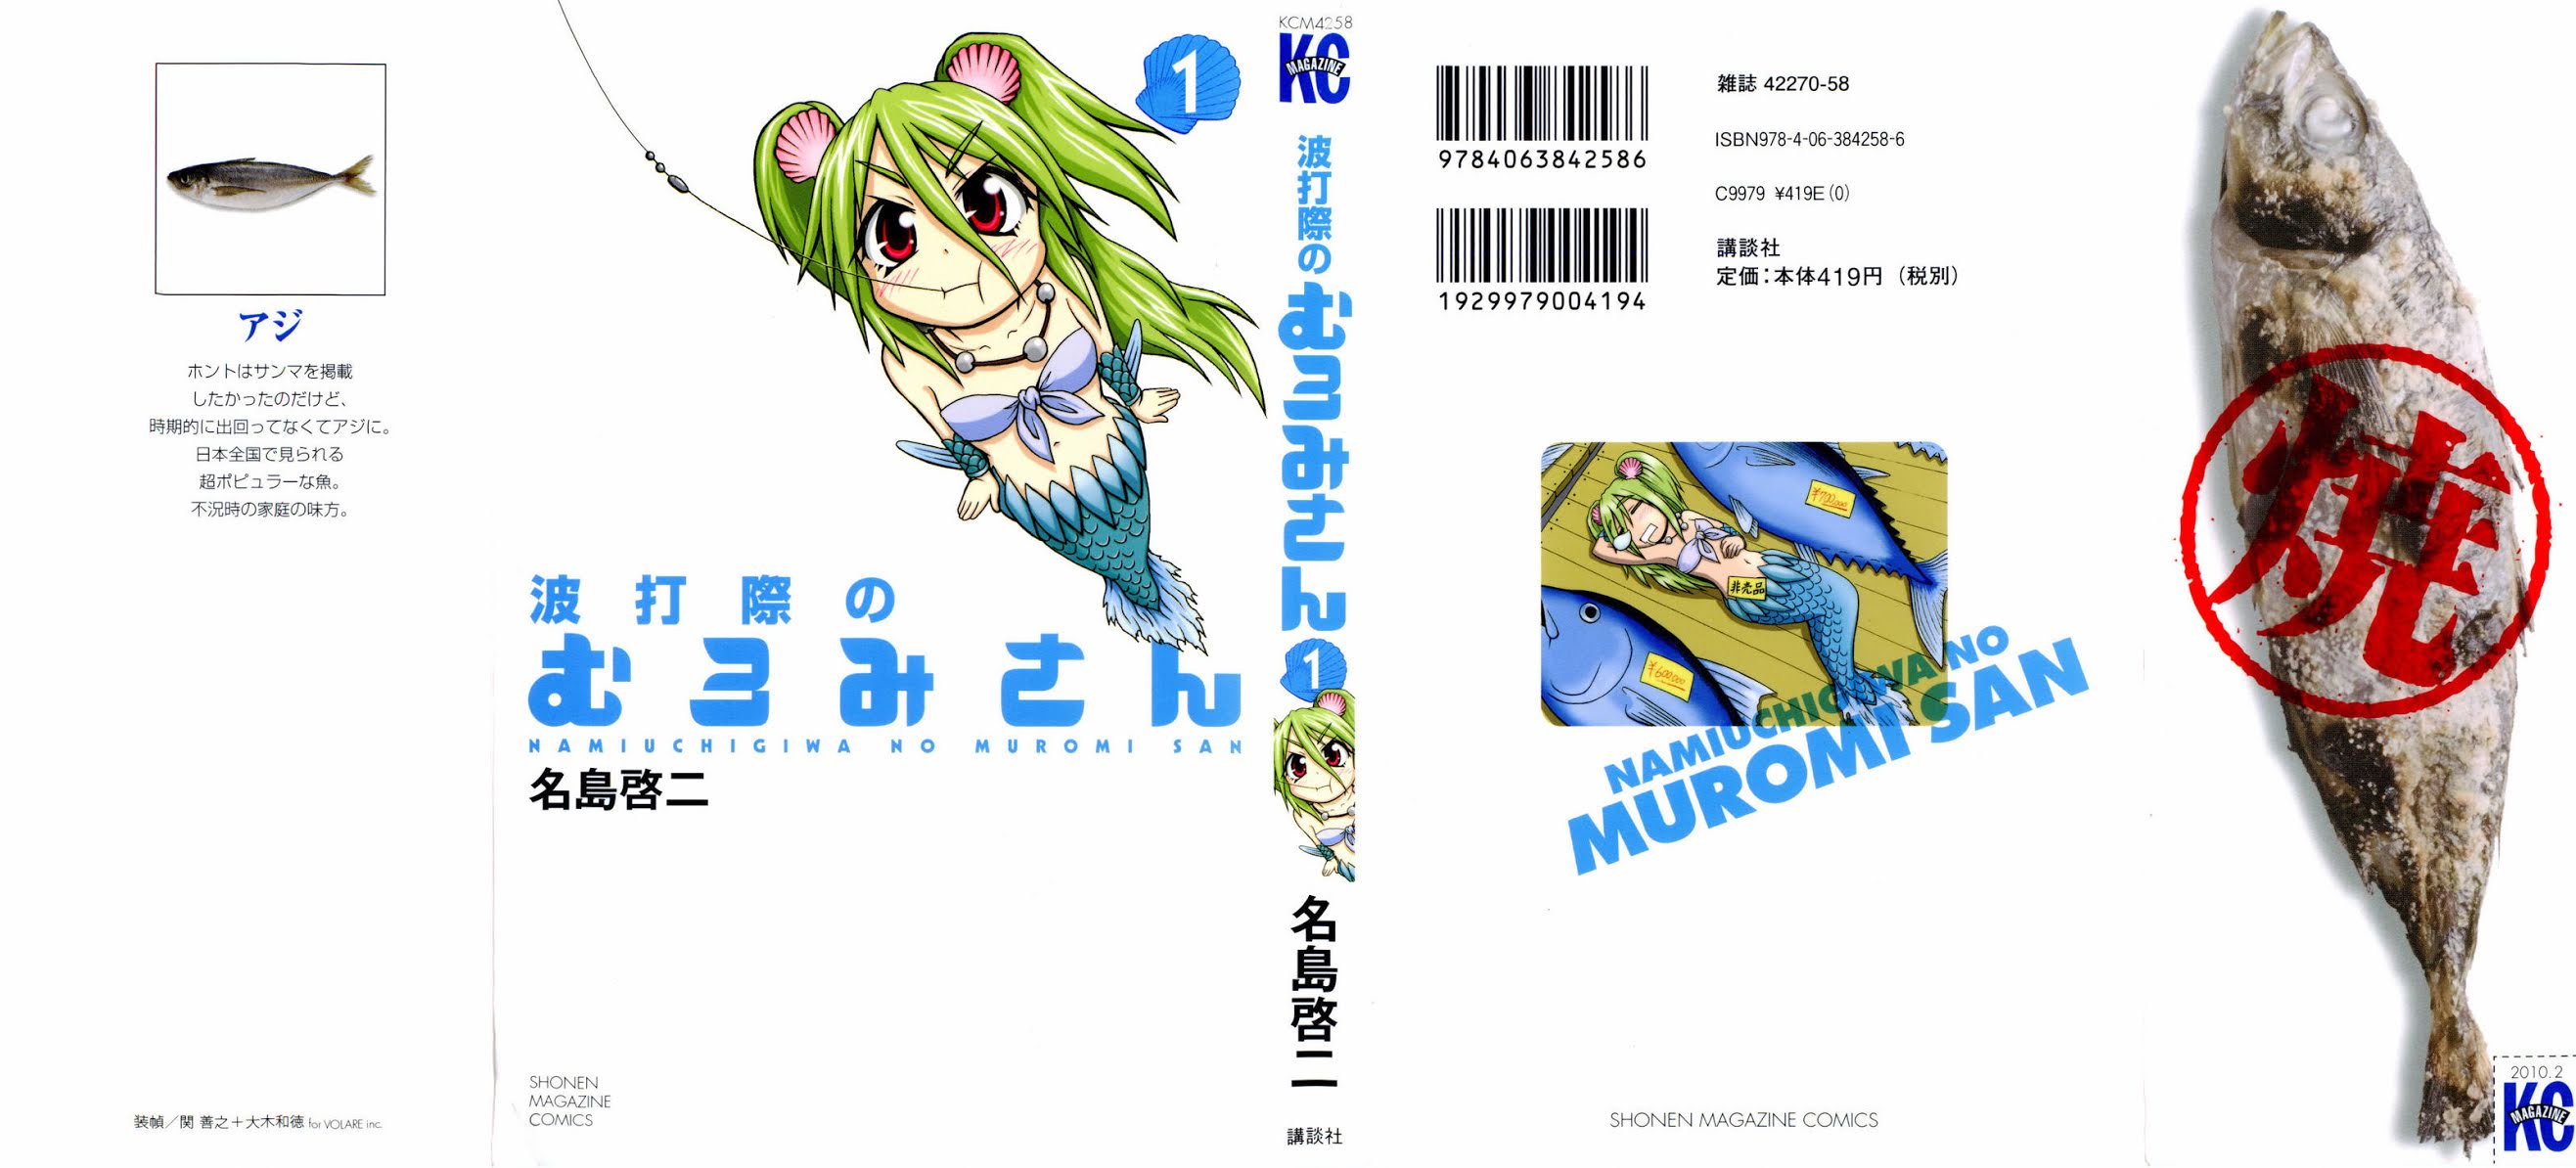 Namiuchigiwa No Muromi-San - Page 1